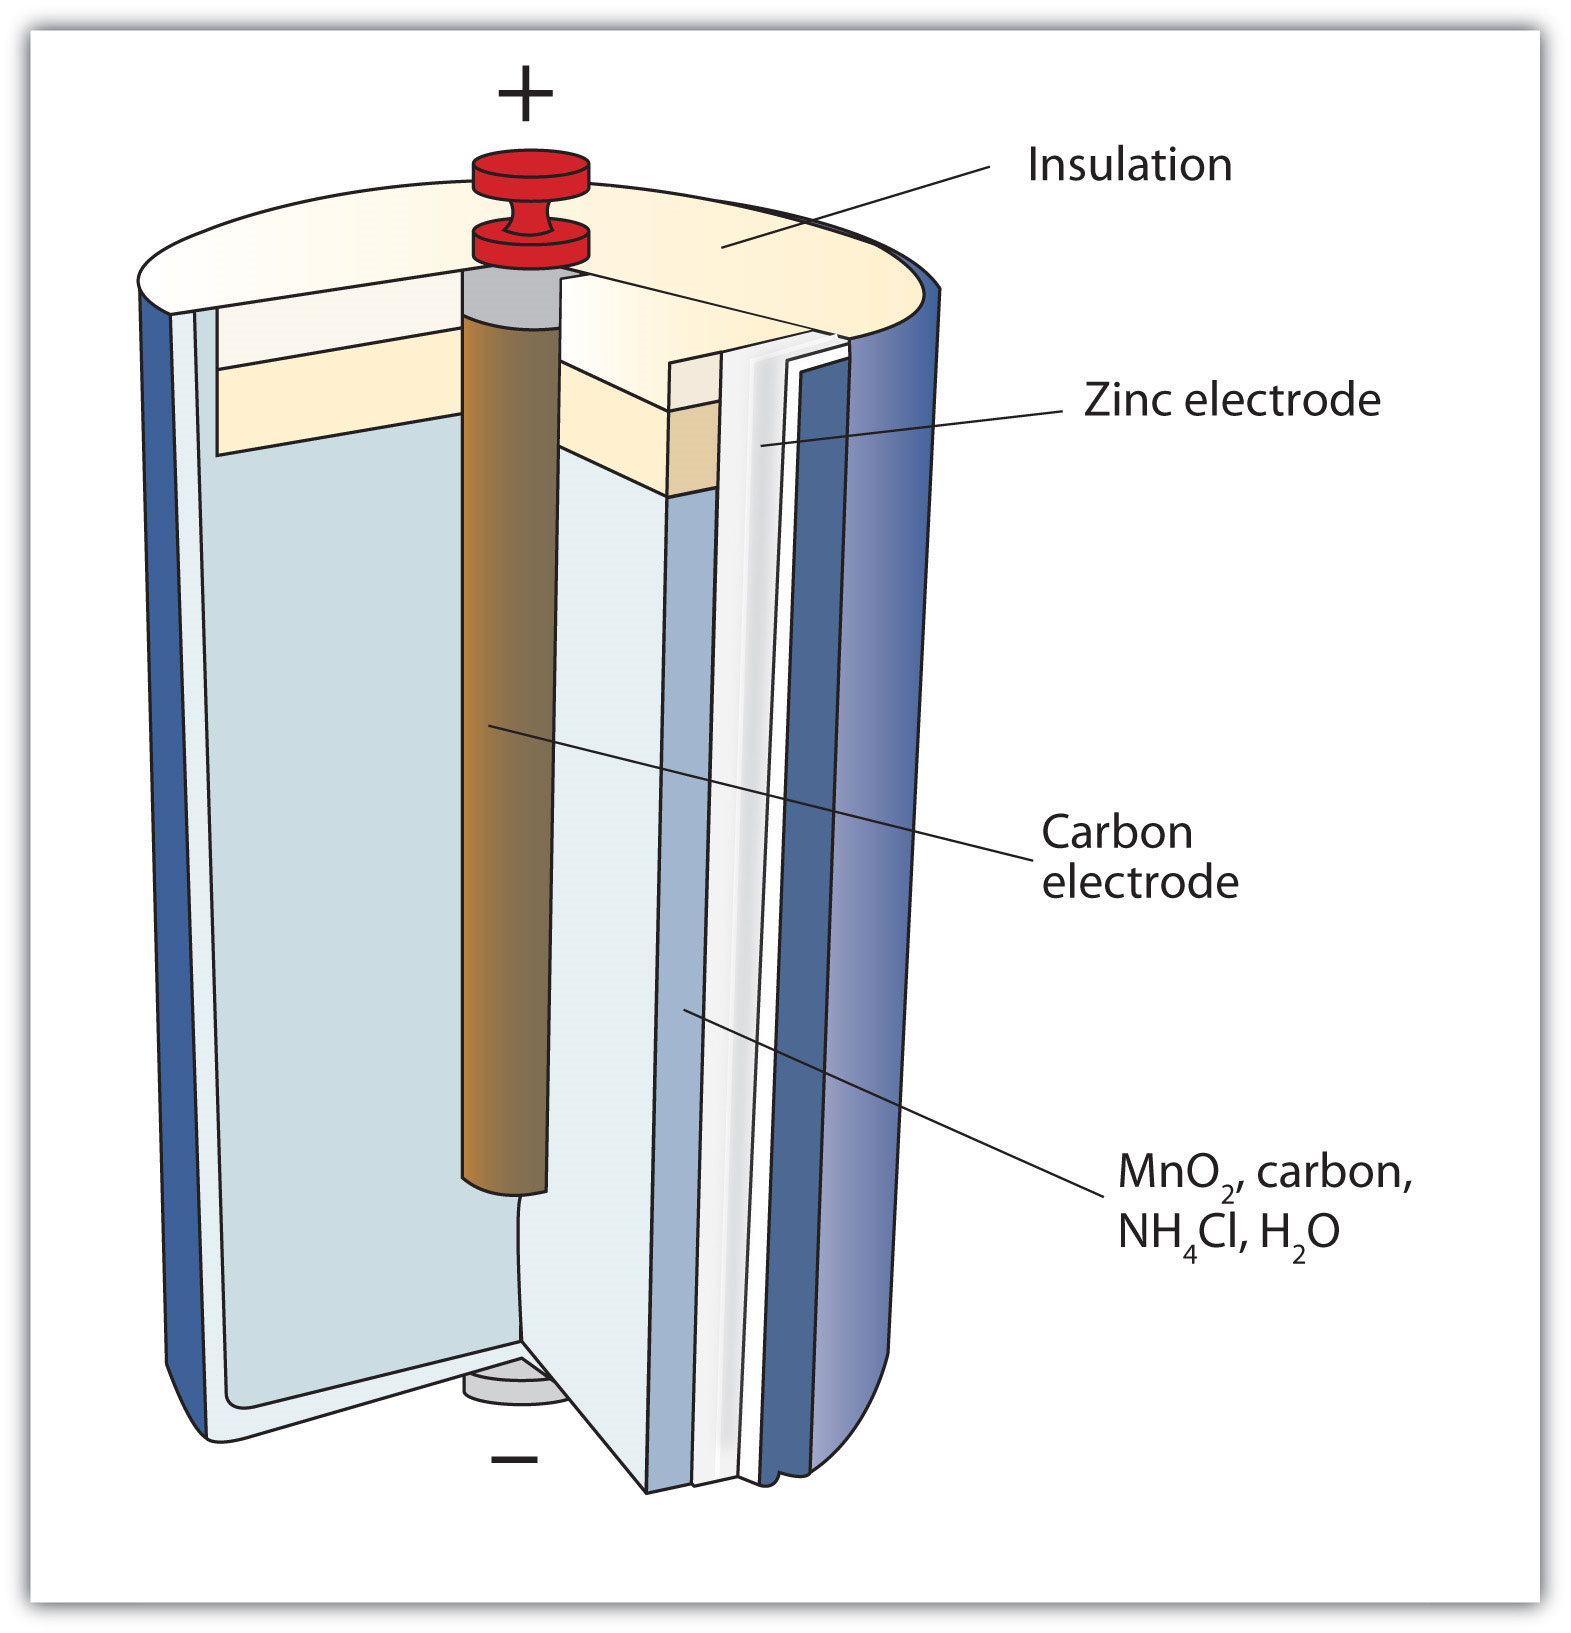 La celda seca consiste en MnO2, carbono, NH4Cl, H2O, un electrodo de carbono, electrodo de zinc y aislamiento. La parte superior tiene una carga positiva con el extremo inferior siendo negativo.